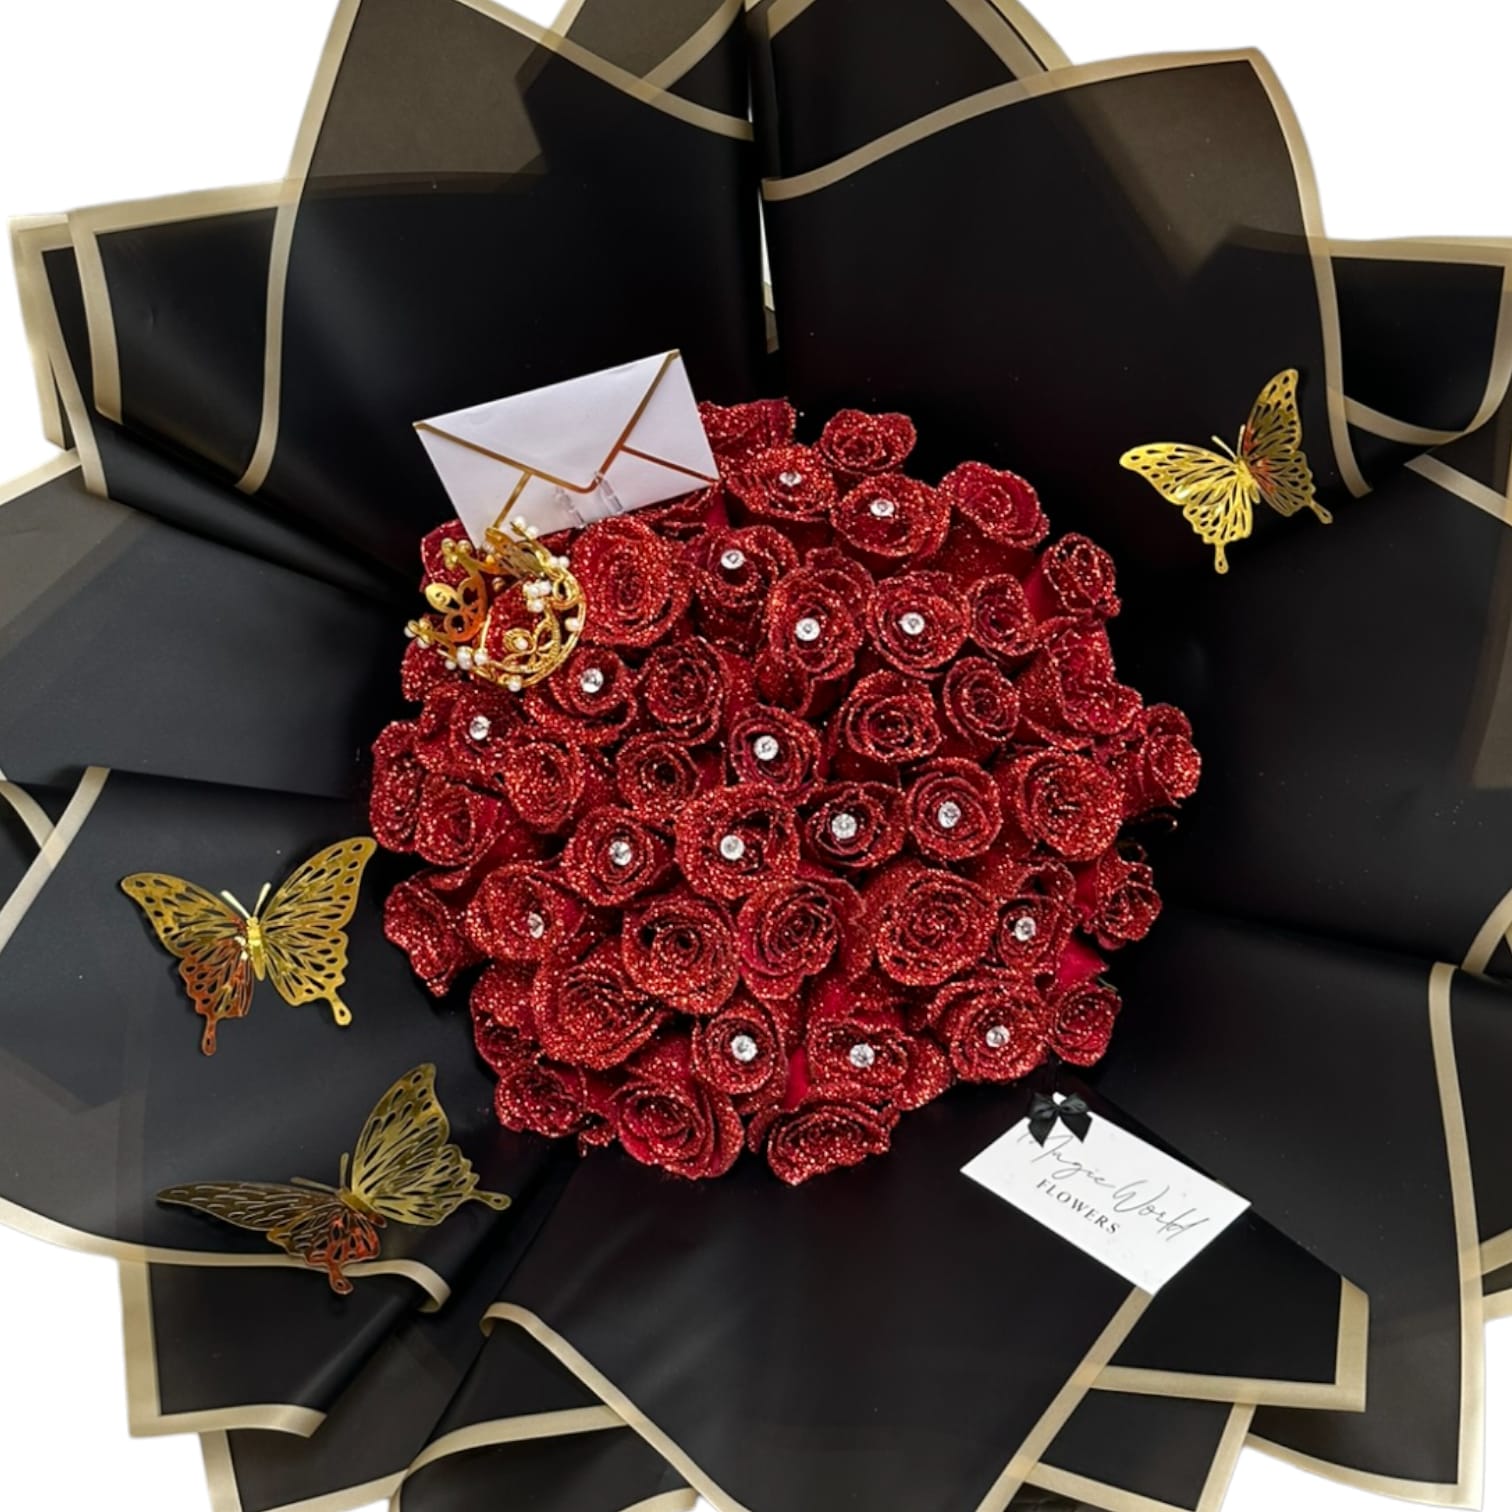 Red Glitter Roses - Black Box  Glitter roses, Red glitter, Glitter flowers